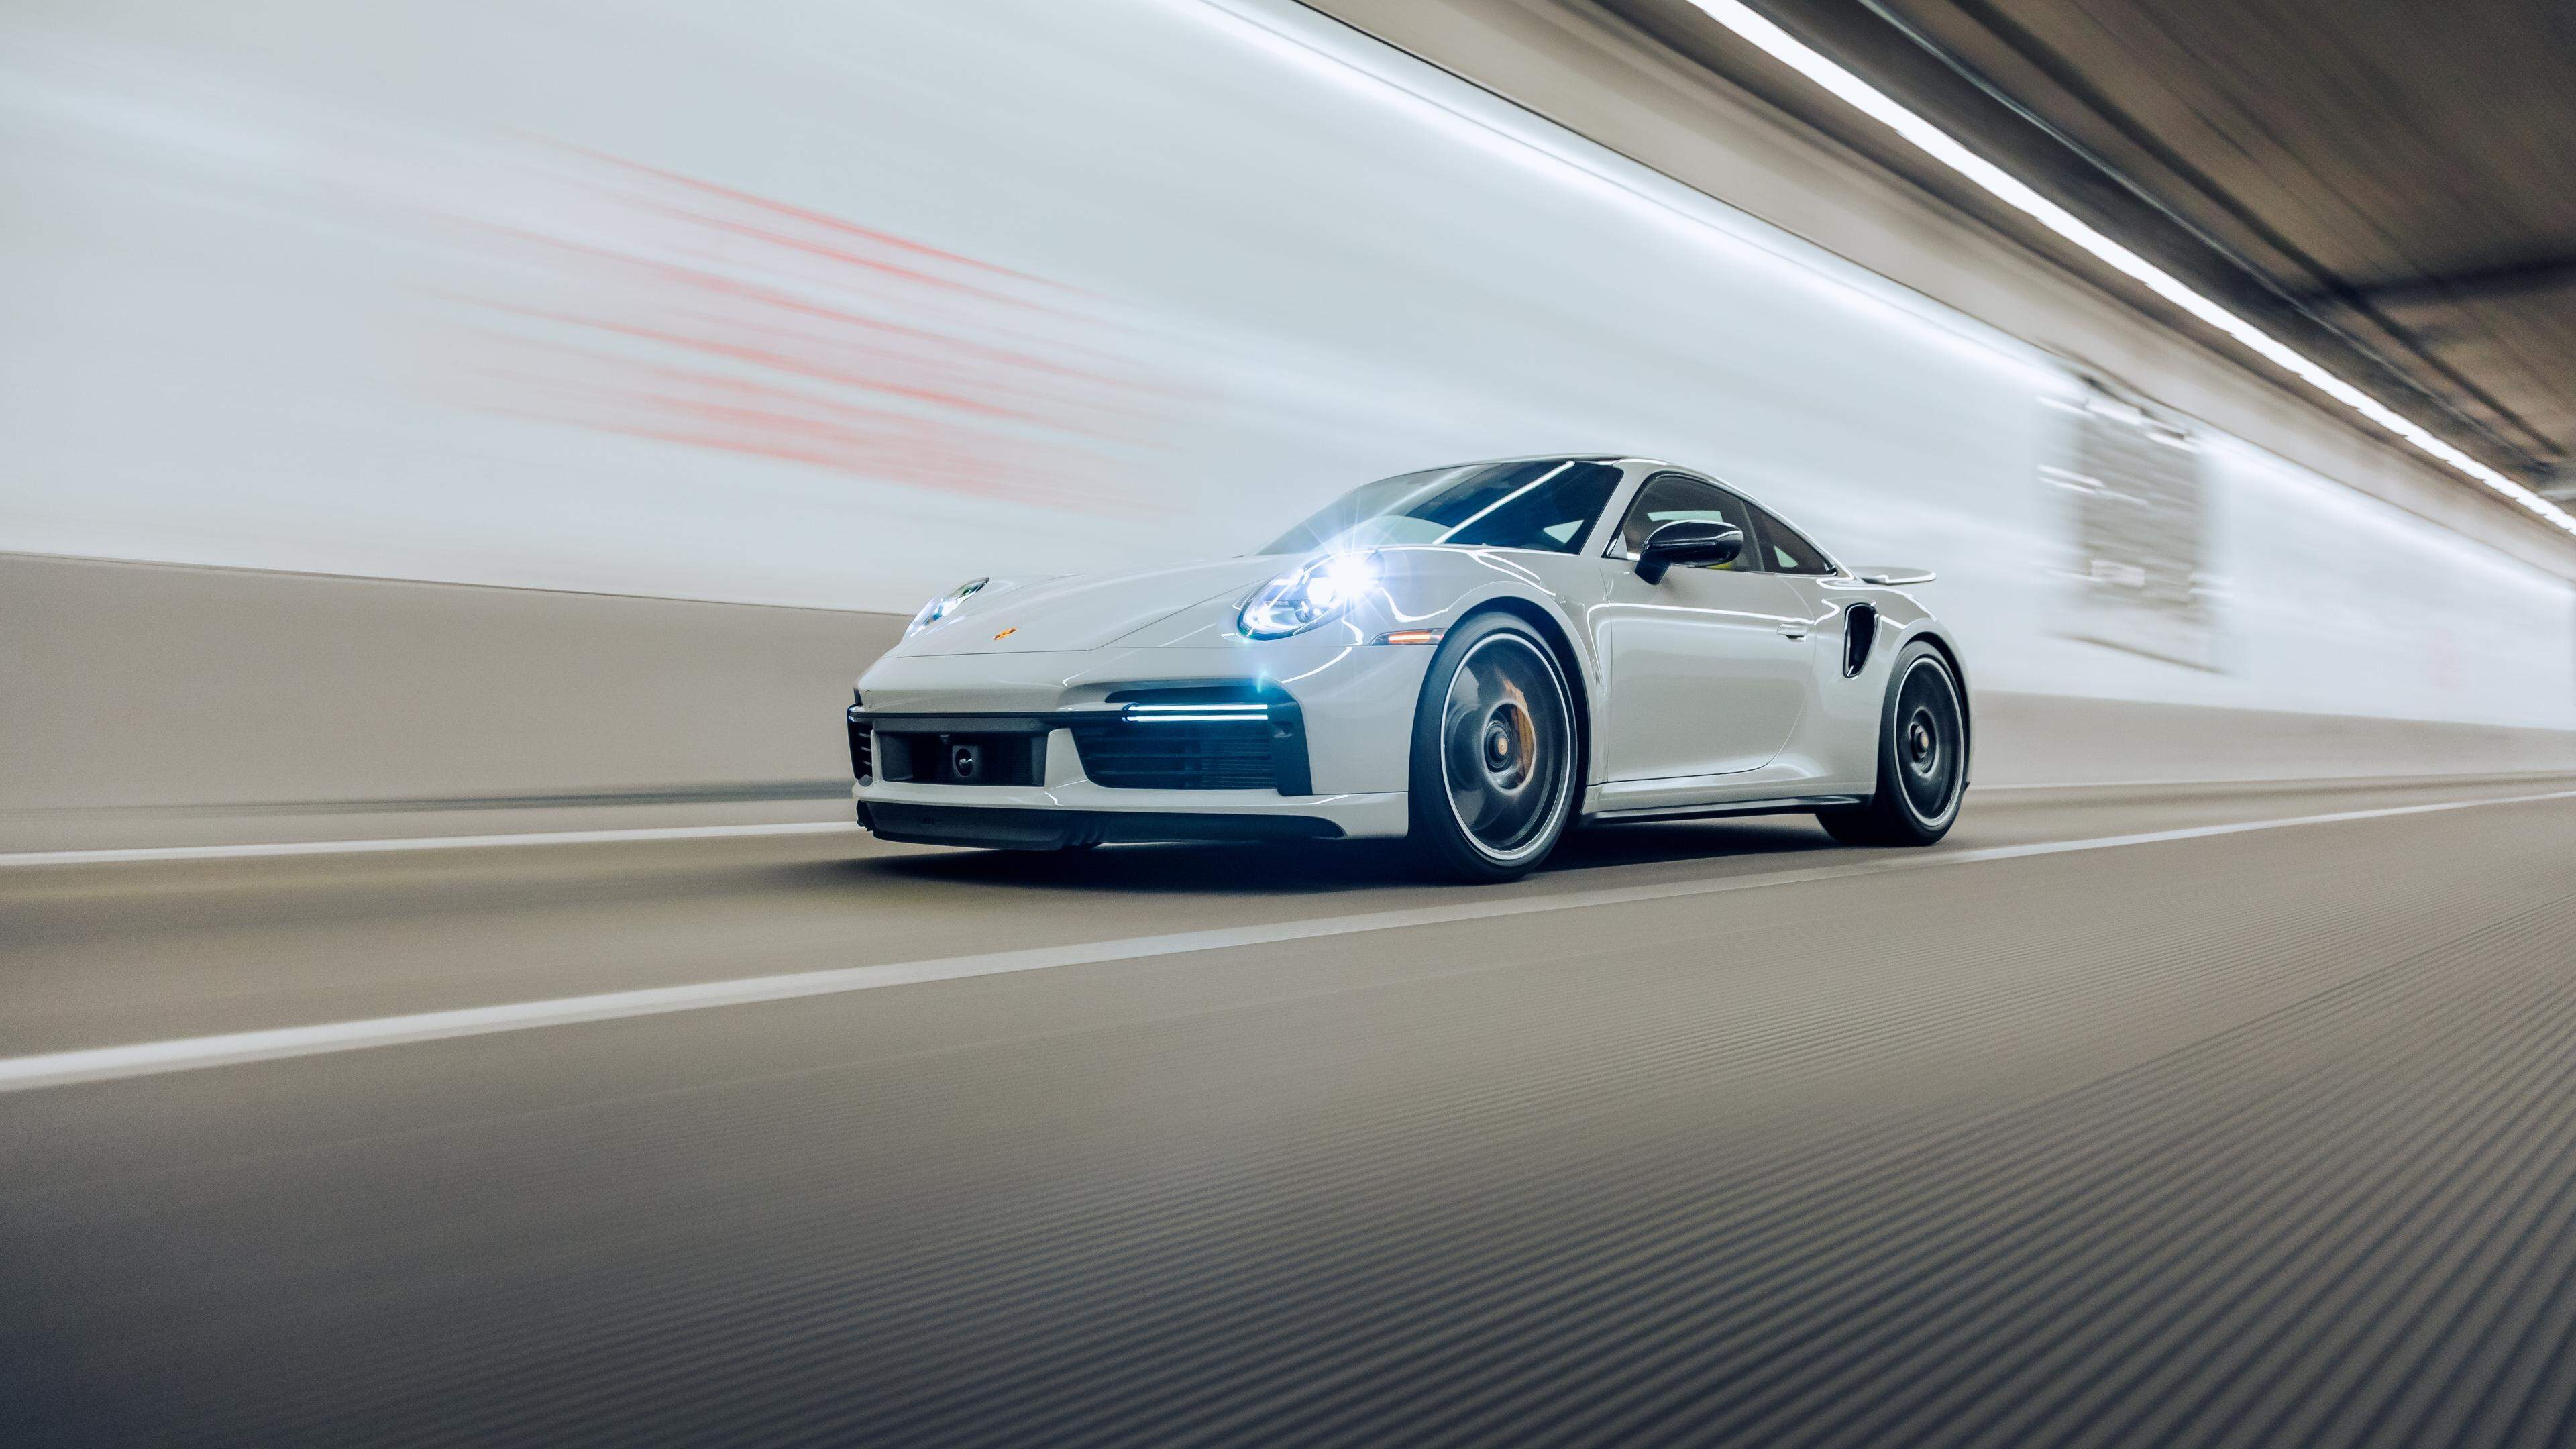 Das Nardò Tecnical Center (NTC) von Porsche mit seiner kreisrunden Hochgeschwindigkeitsstrecke soll ausgebaut werden. Umweltschützer wollen dem Vorhaben einen Riegel vorschoieben. 